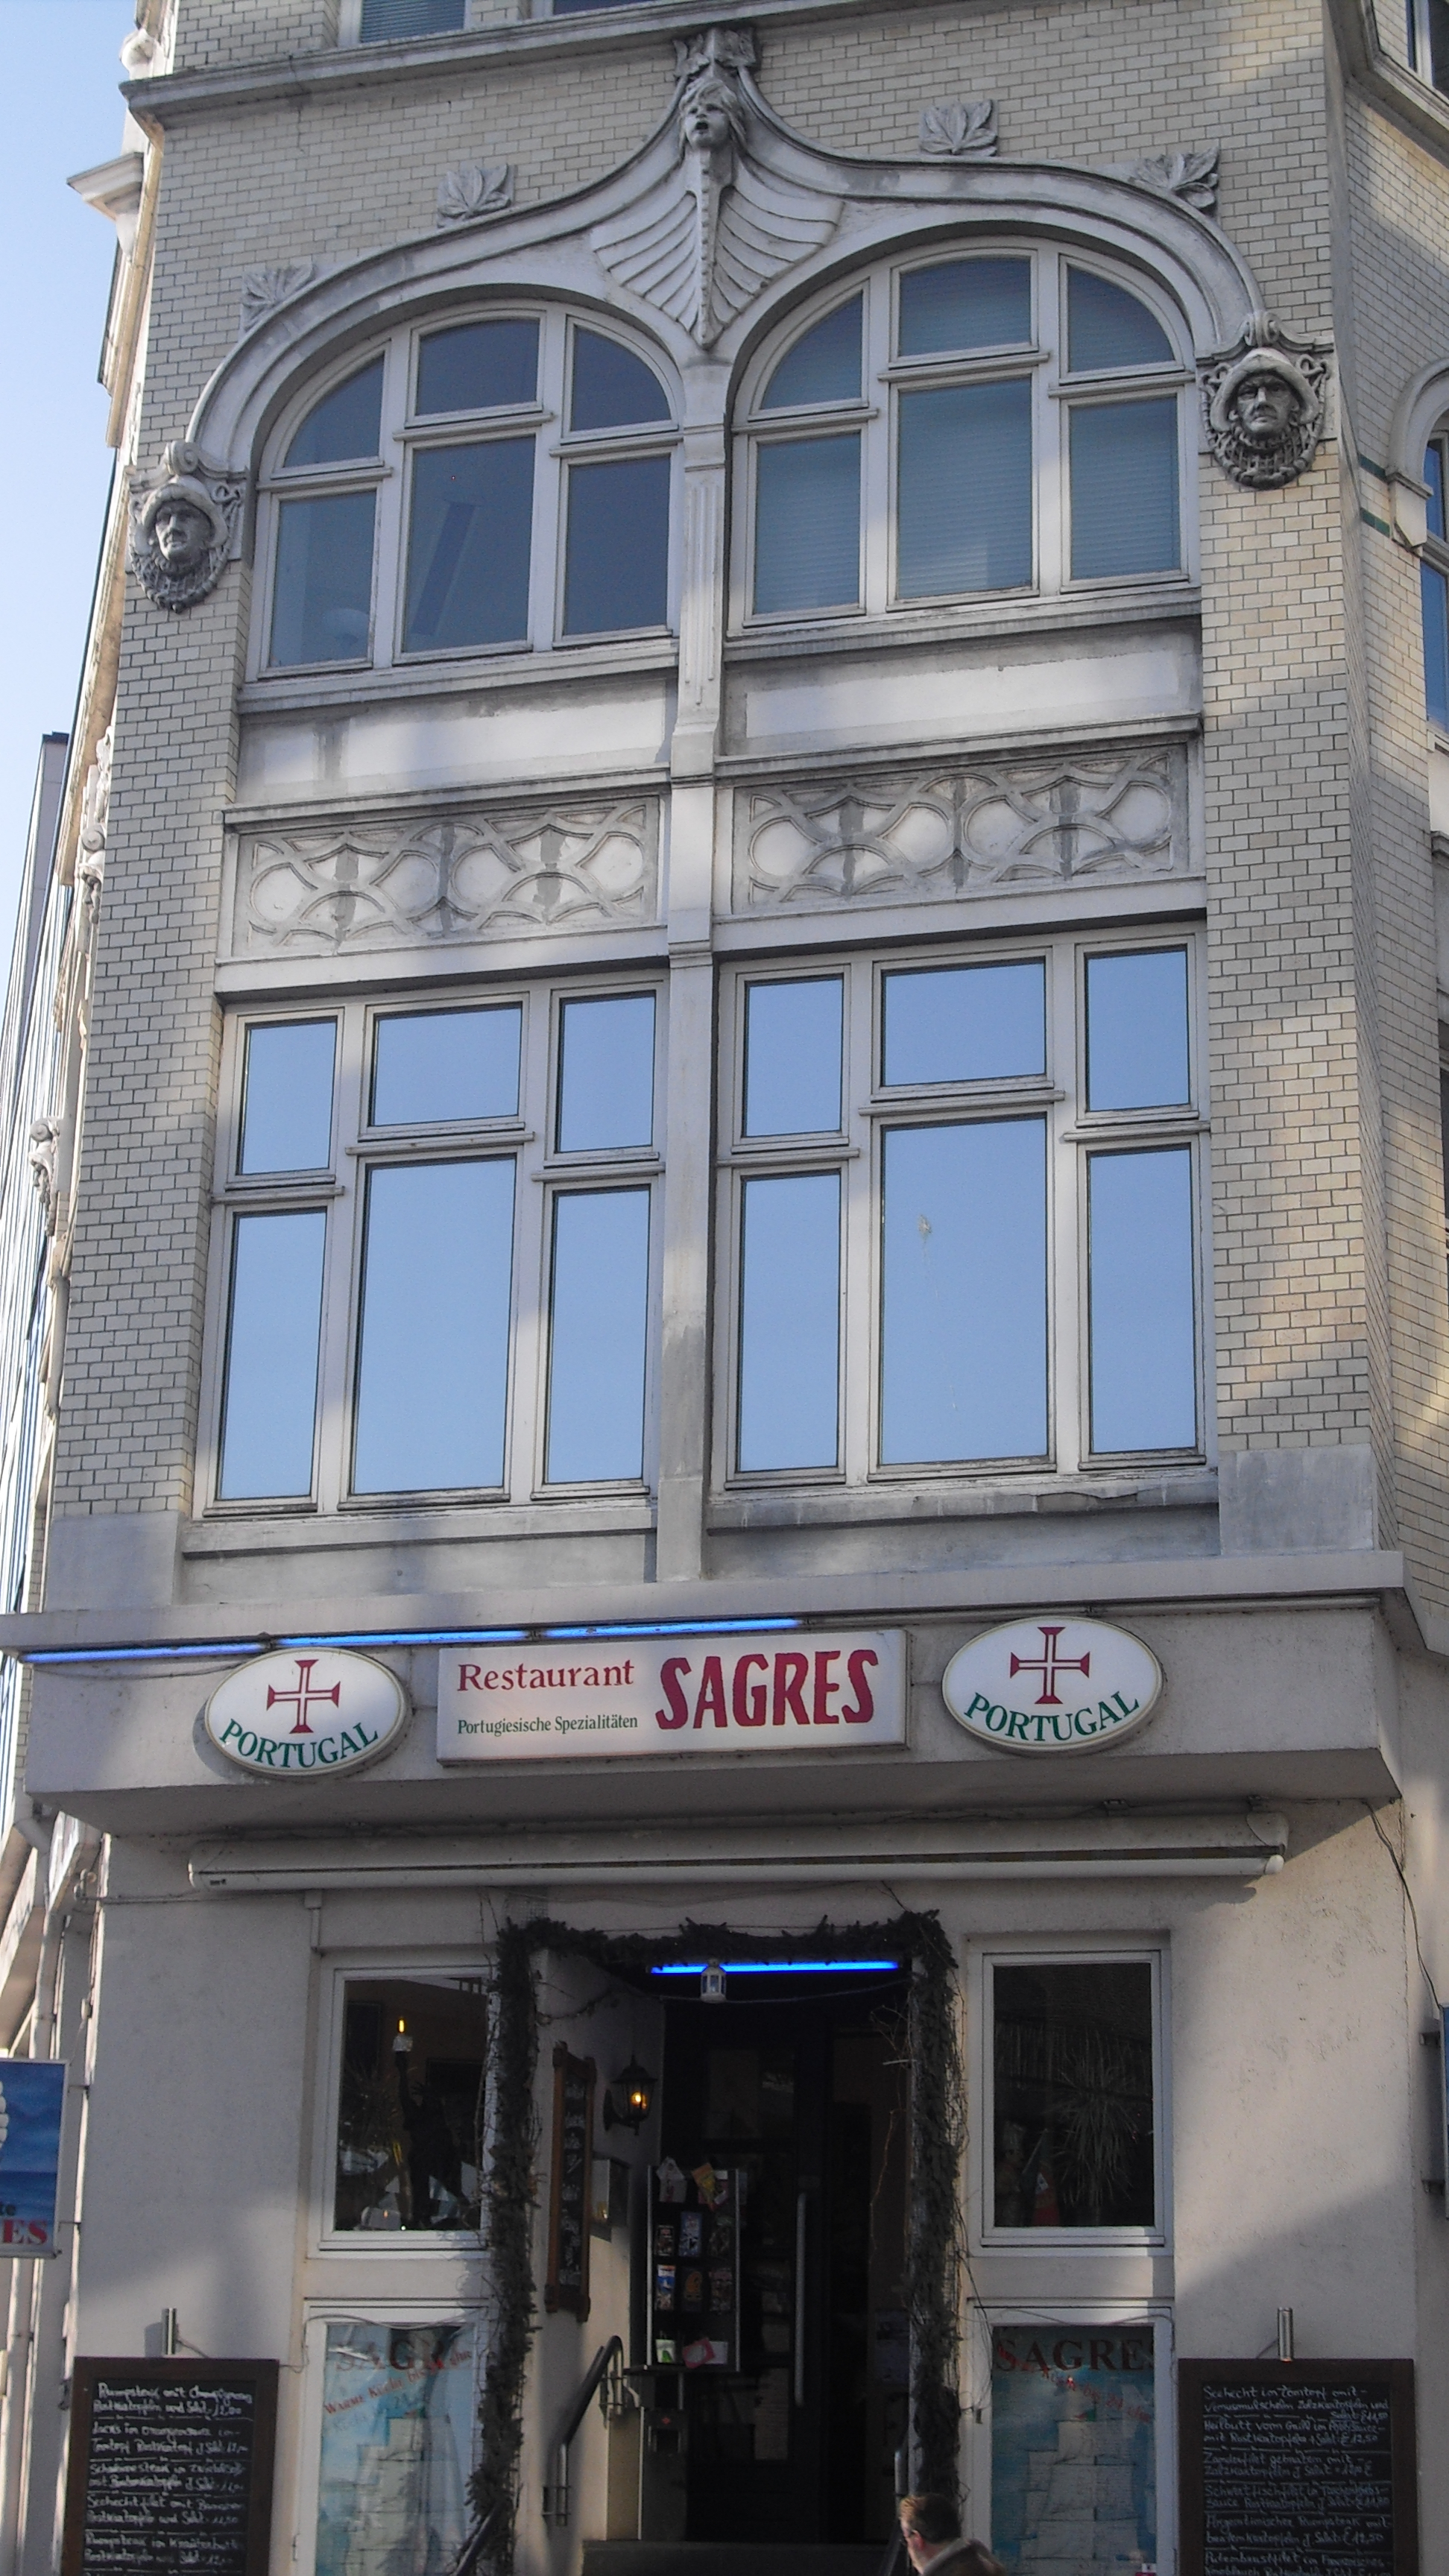 Restaurant Sagres im Portugiesen Viertel